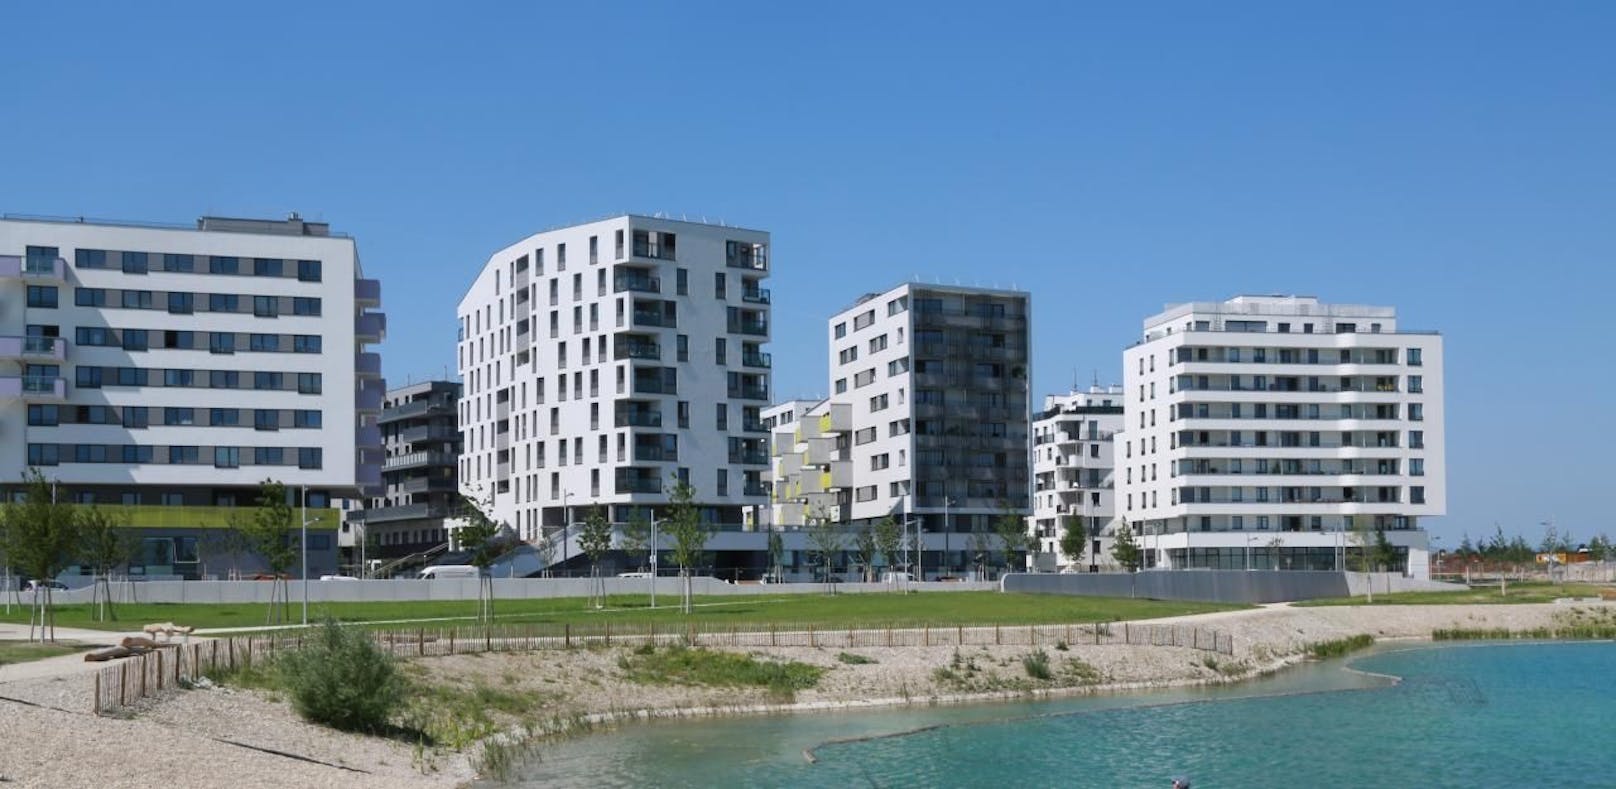 In der Seestadt Aspern zahlt man mehr fürs Wohnen als in Berlin.